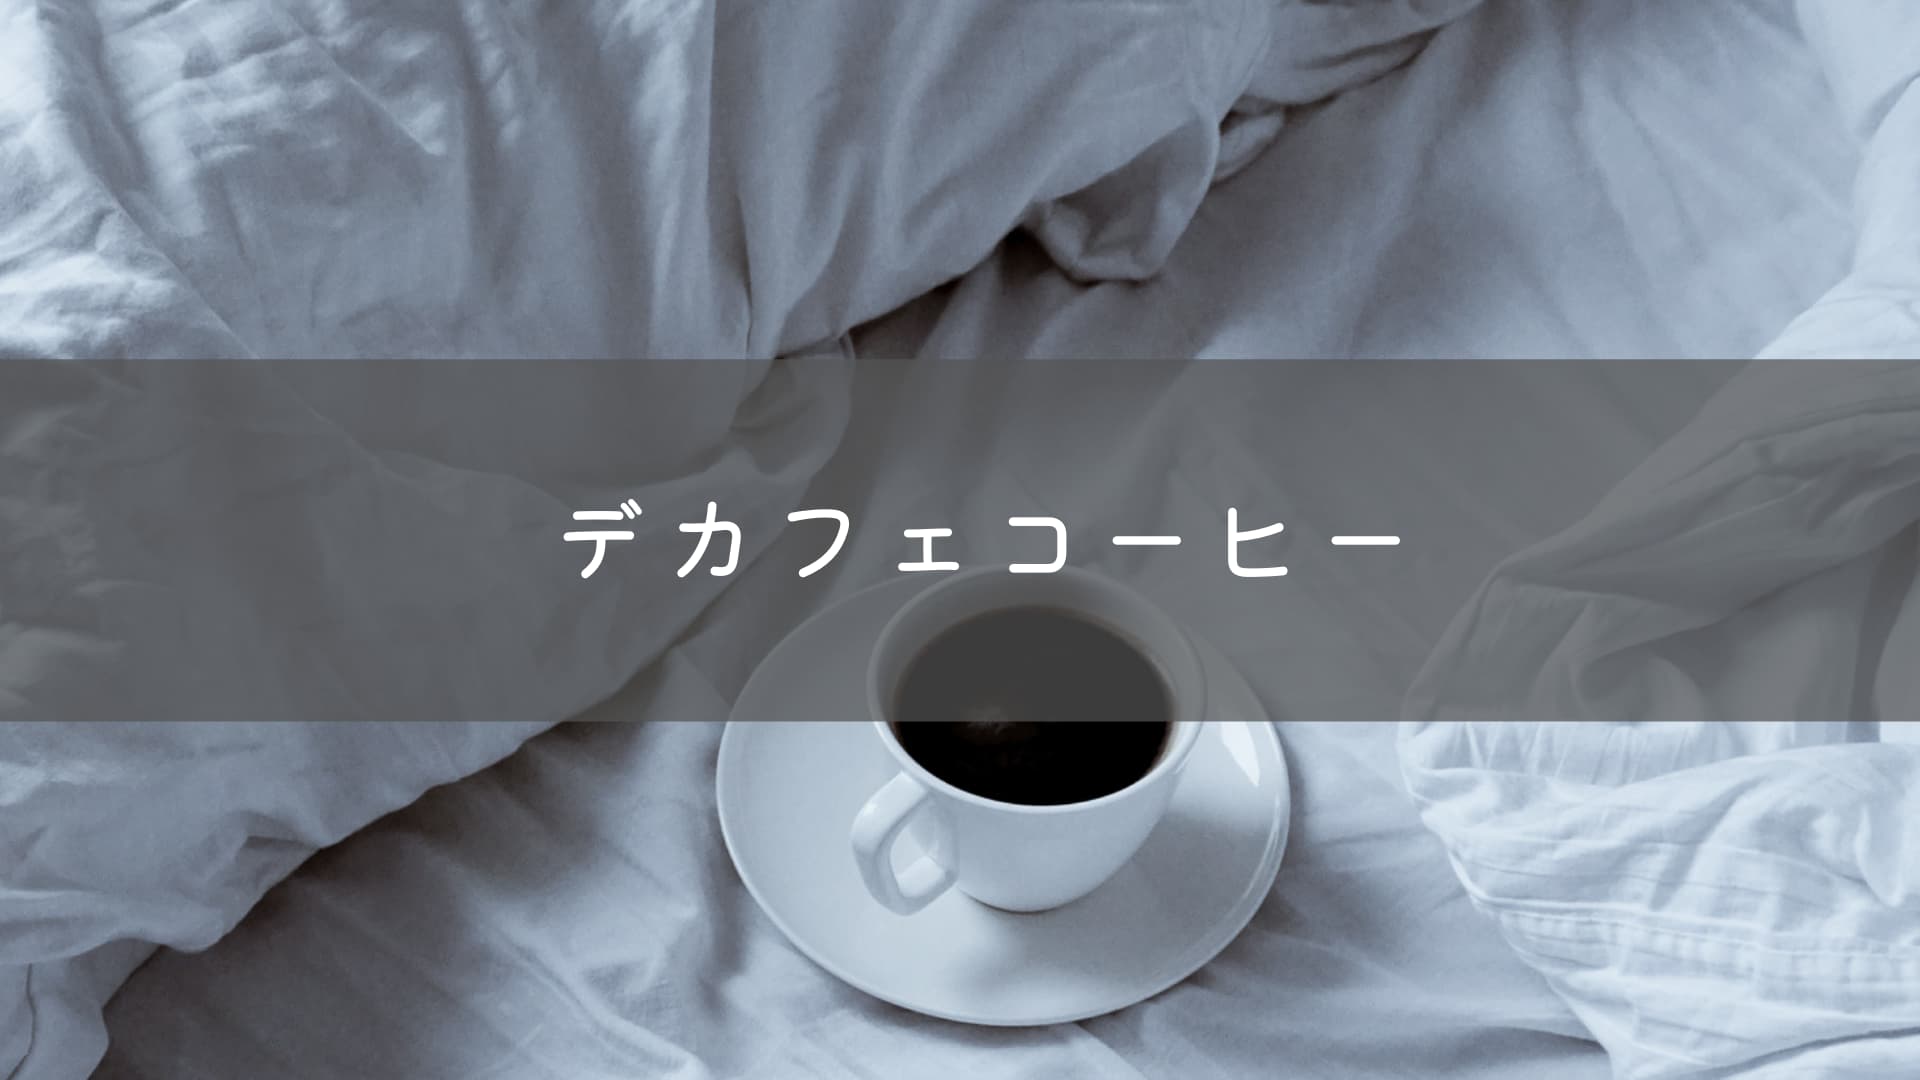 就寝前はデカフェを。その意味と効果、おすすめコーヒーを紹介